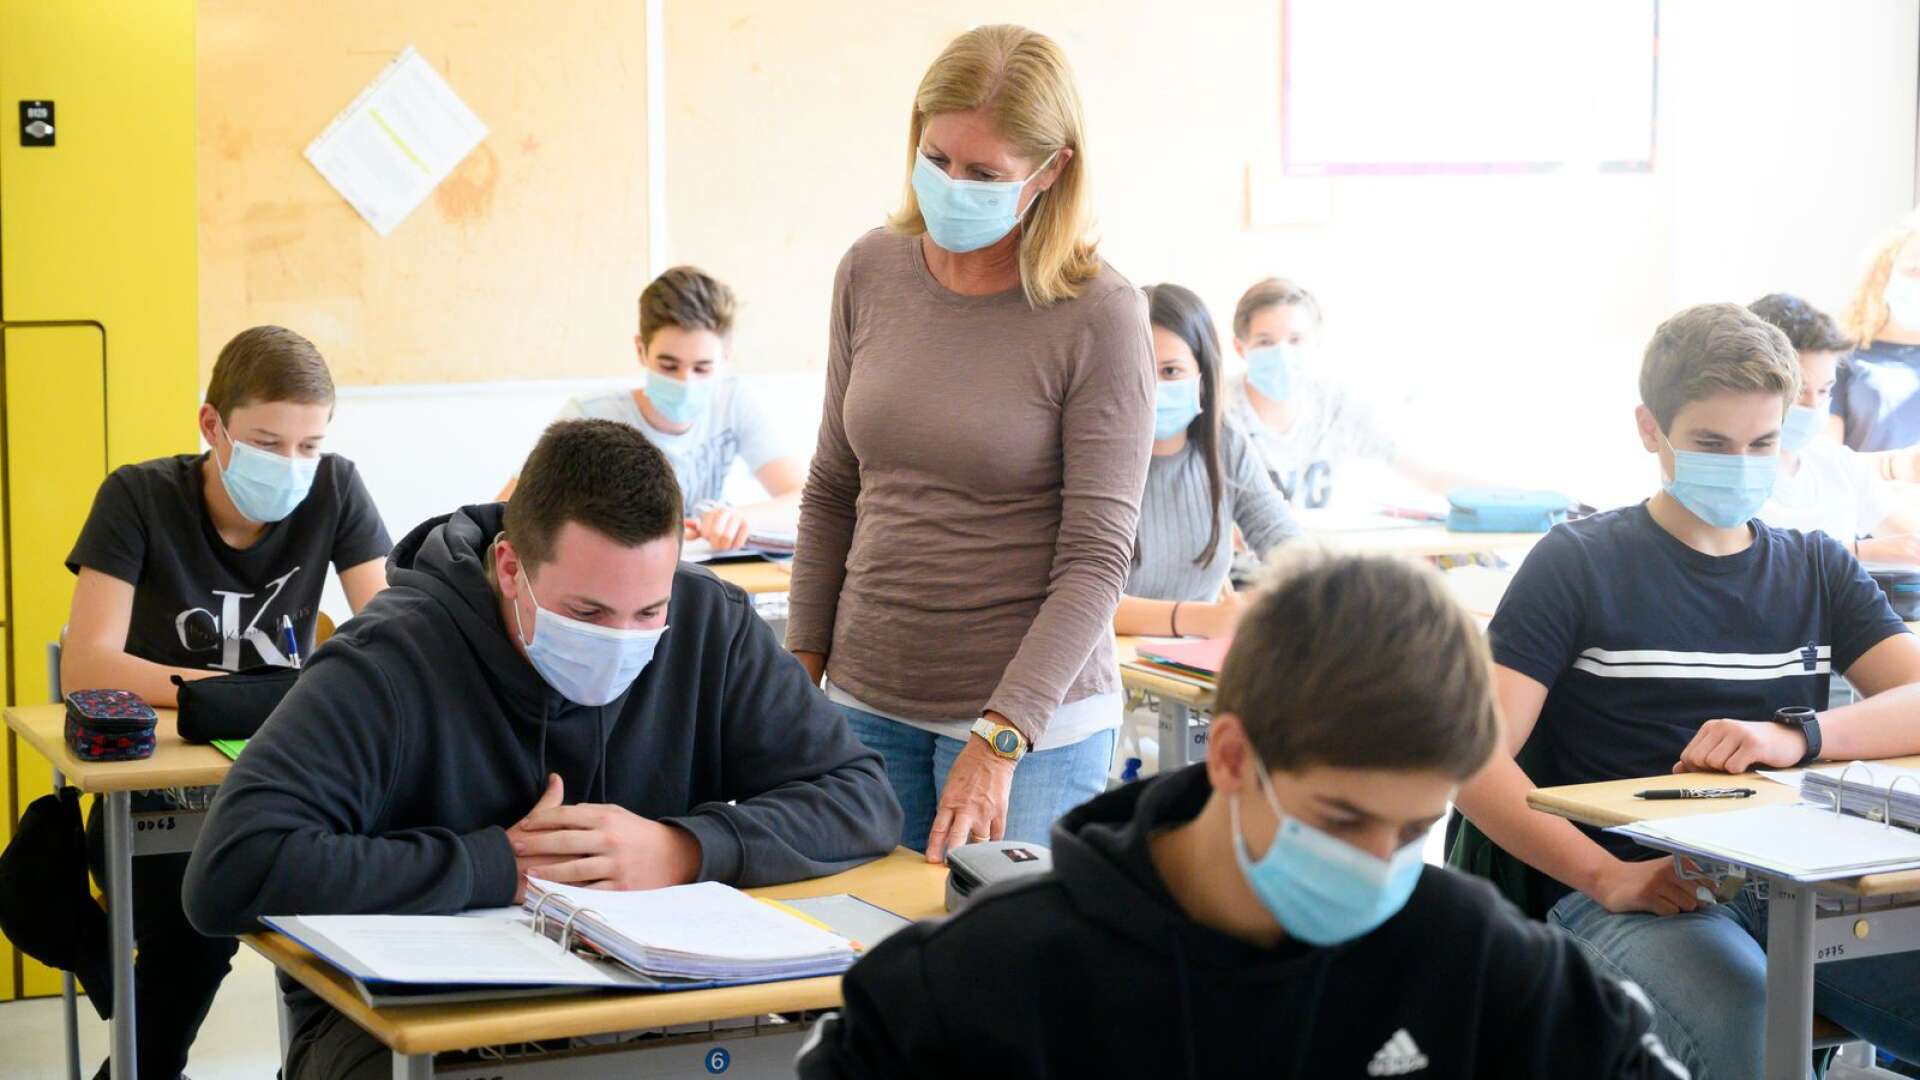 I skolor i andra länder, som här i Italien, har både lärare och elever munskydd. Karlskoga kommun rekommenderar skolanställda att använda munskydd eller visir. Elever omfattas inte, vilket det inte heller finns något myndighetsstöd för i Sverige. 